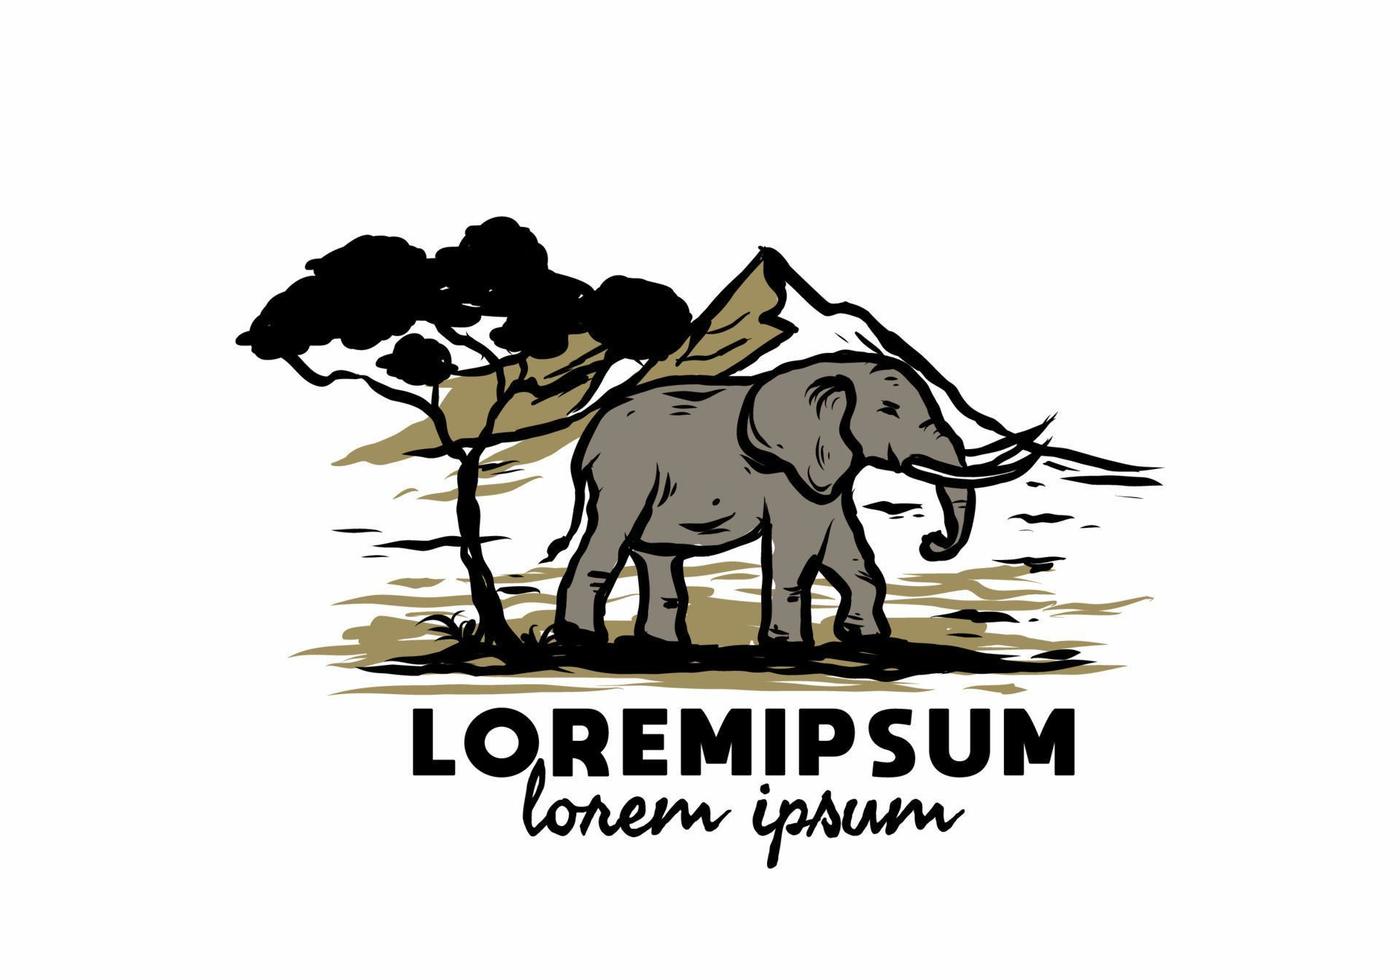 große elefantenillustrationszeichnung mit lorem ipsum-text vektor